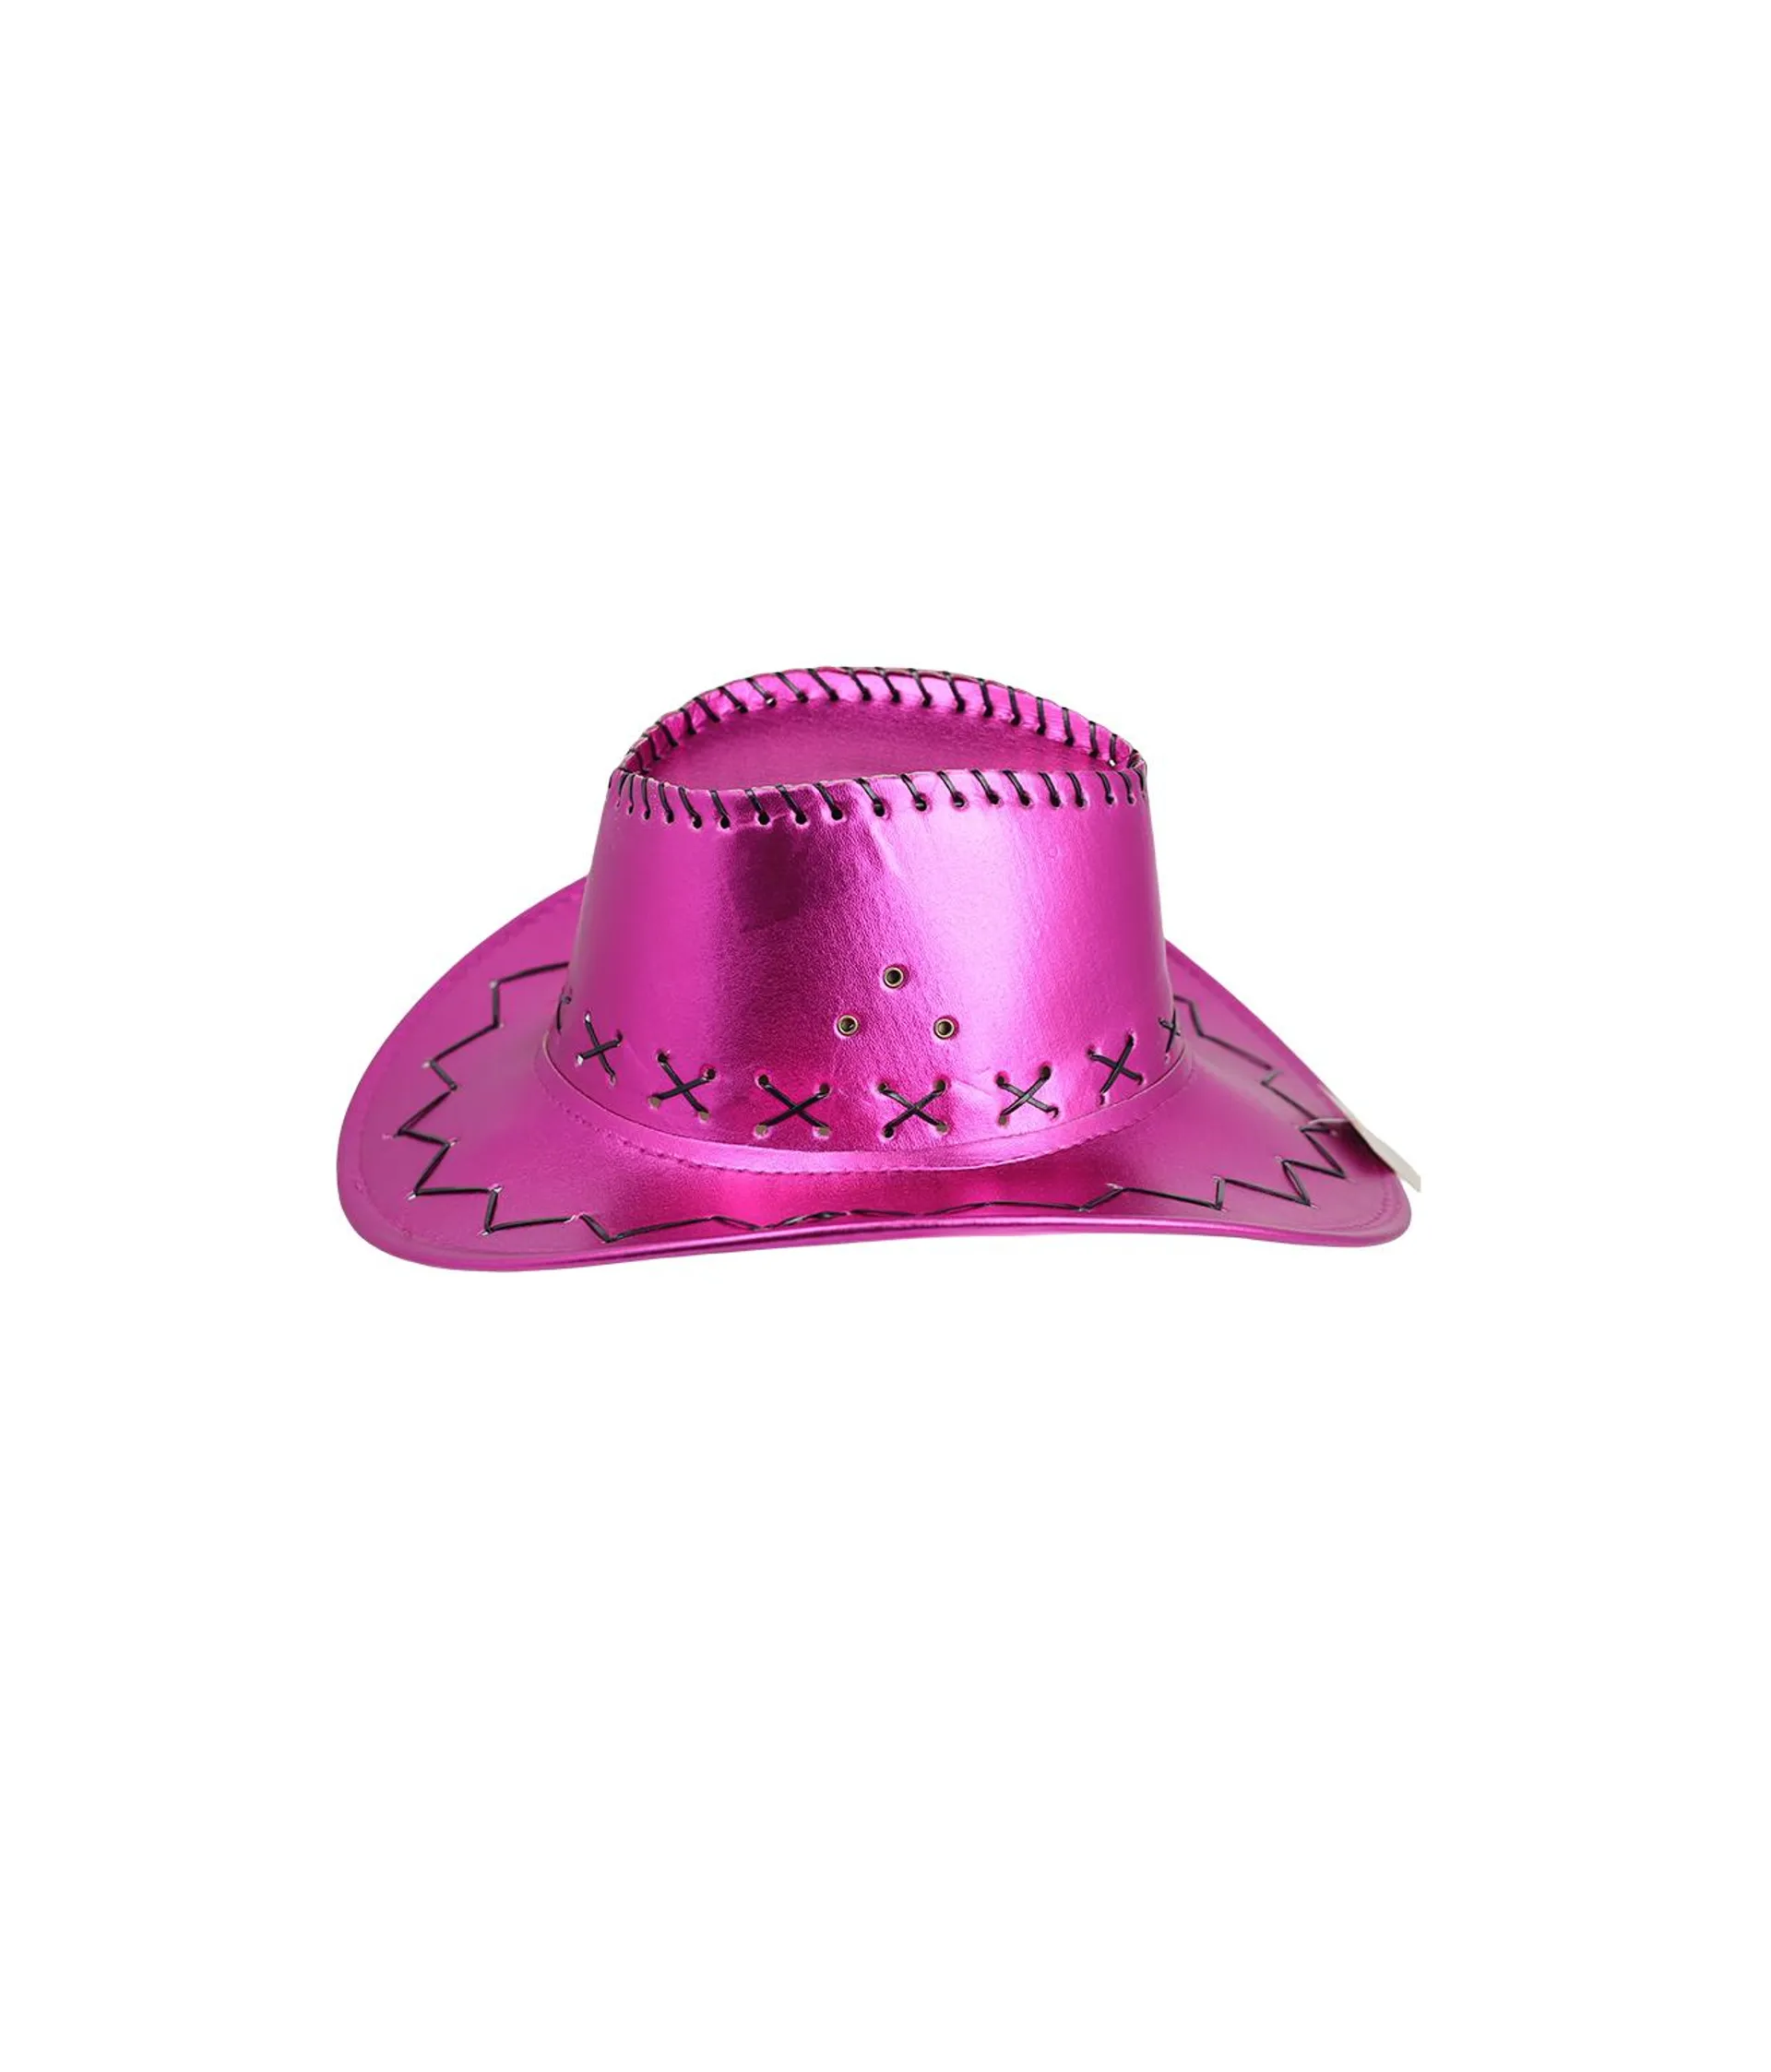 Hot Pink Metallic Cowboy Hat